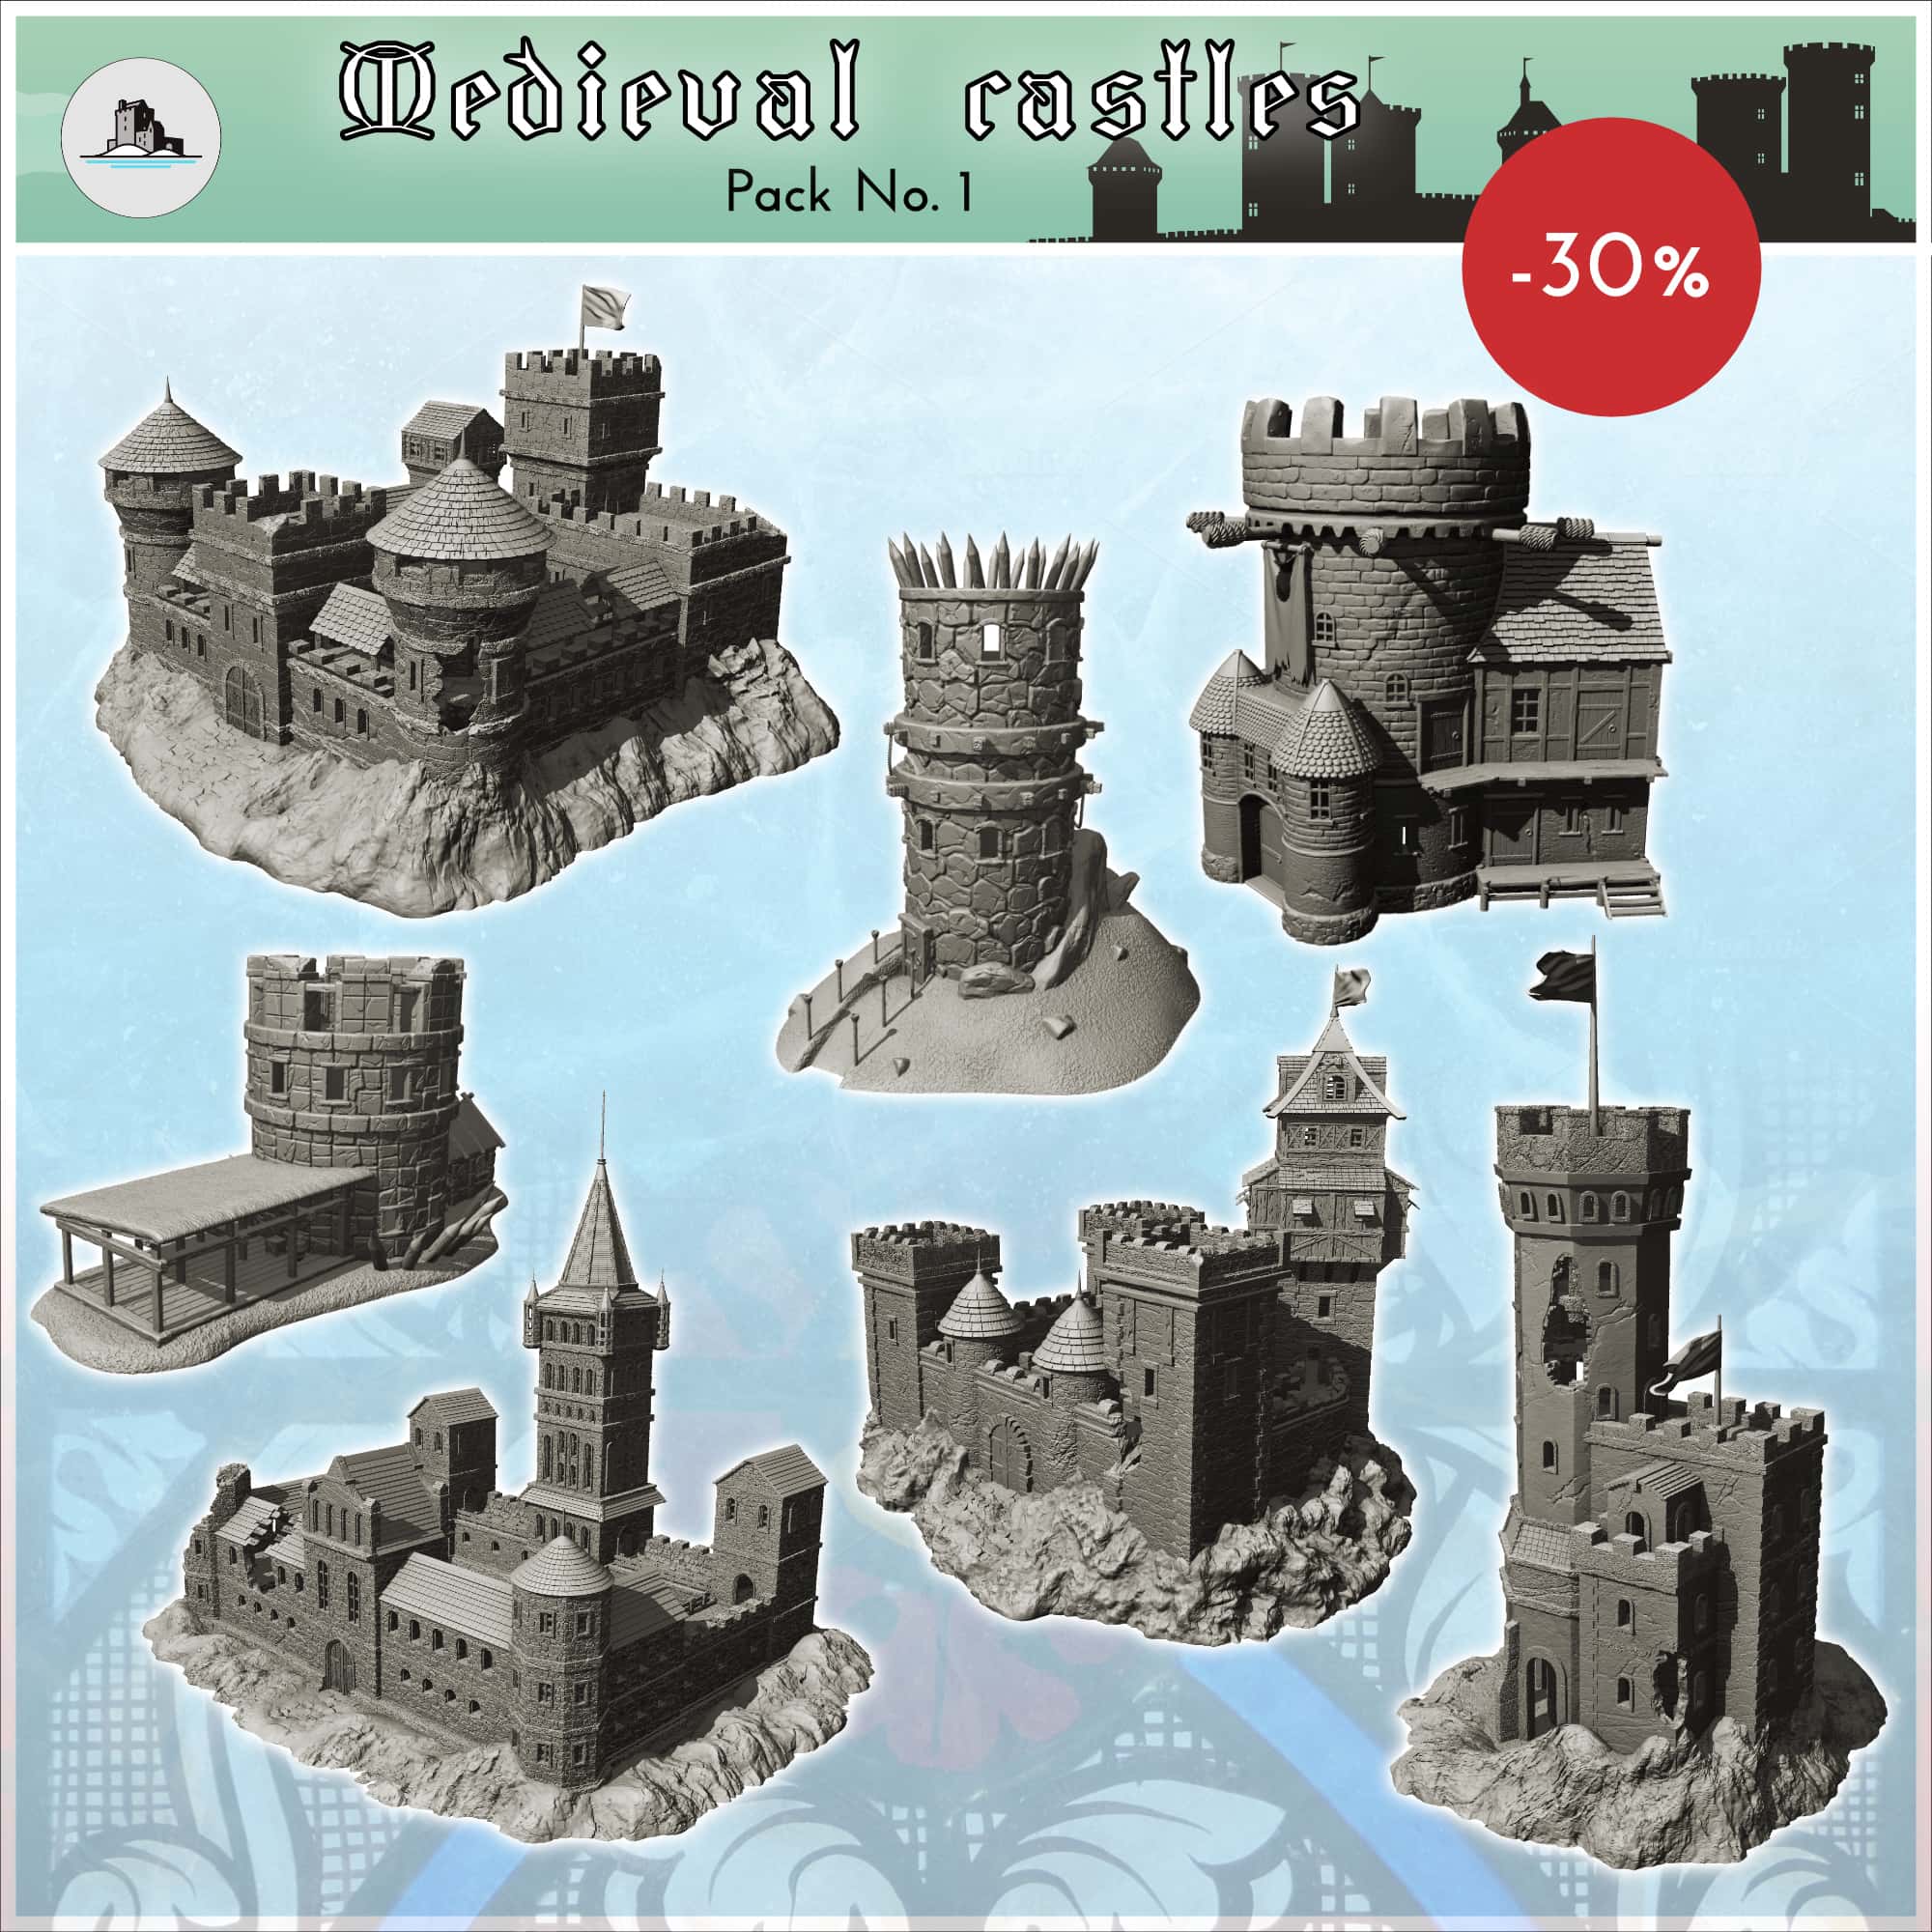 Domus-kits Medieval Series Burgen 5 Castle Scale 1:87 MINT 40905